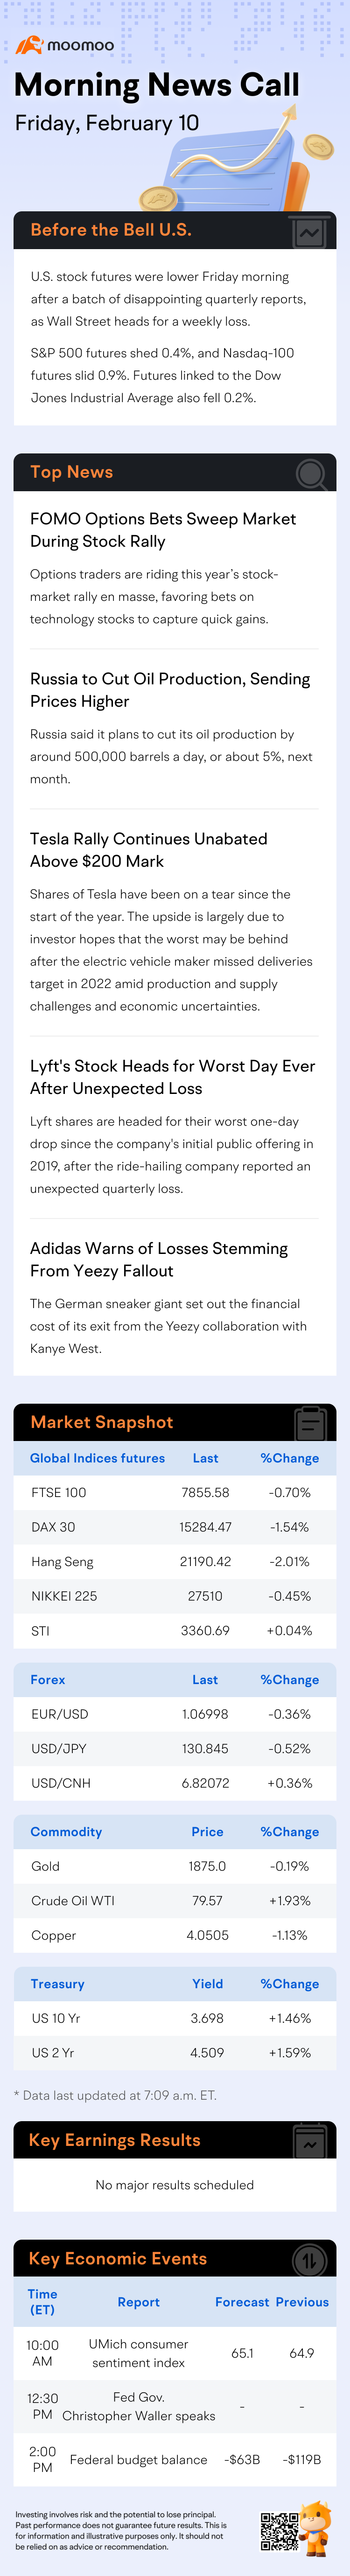 響鈴之前 | Lyft 股票在意外虧損後面臨有史以來最糟糕的一天